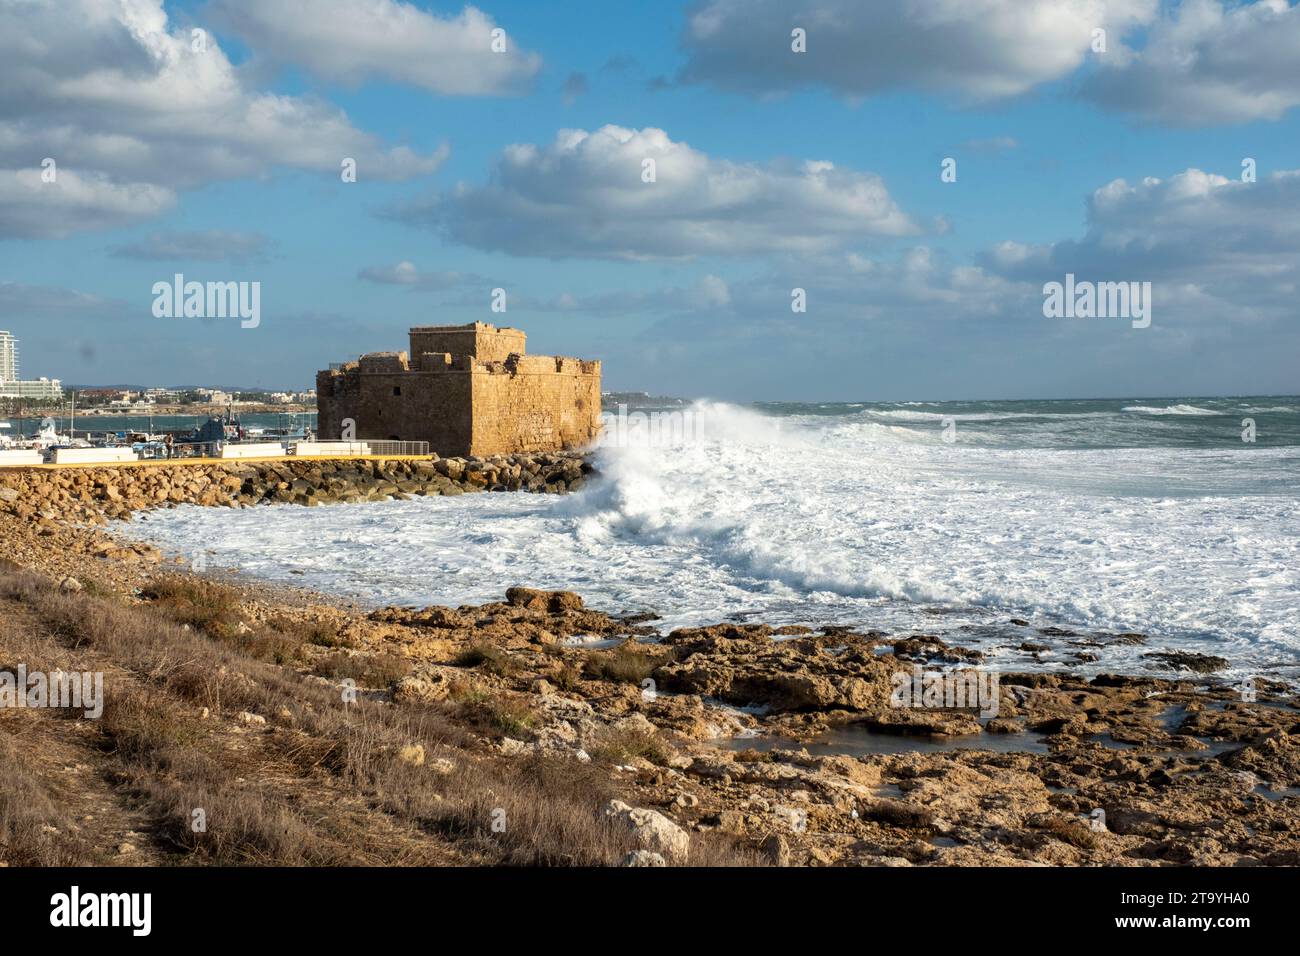 Les mers agitées frappent les rochers du château de Paphos, à Paphos, Chypre. Banque D'Images